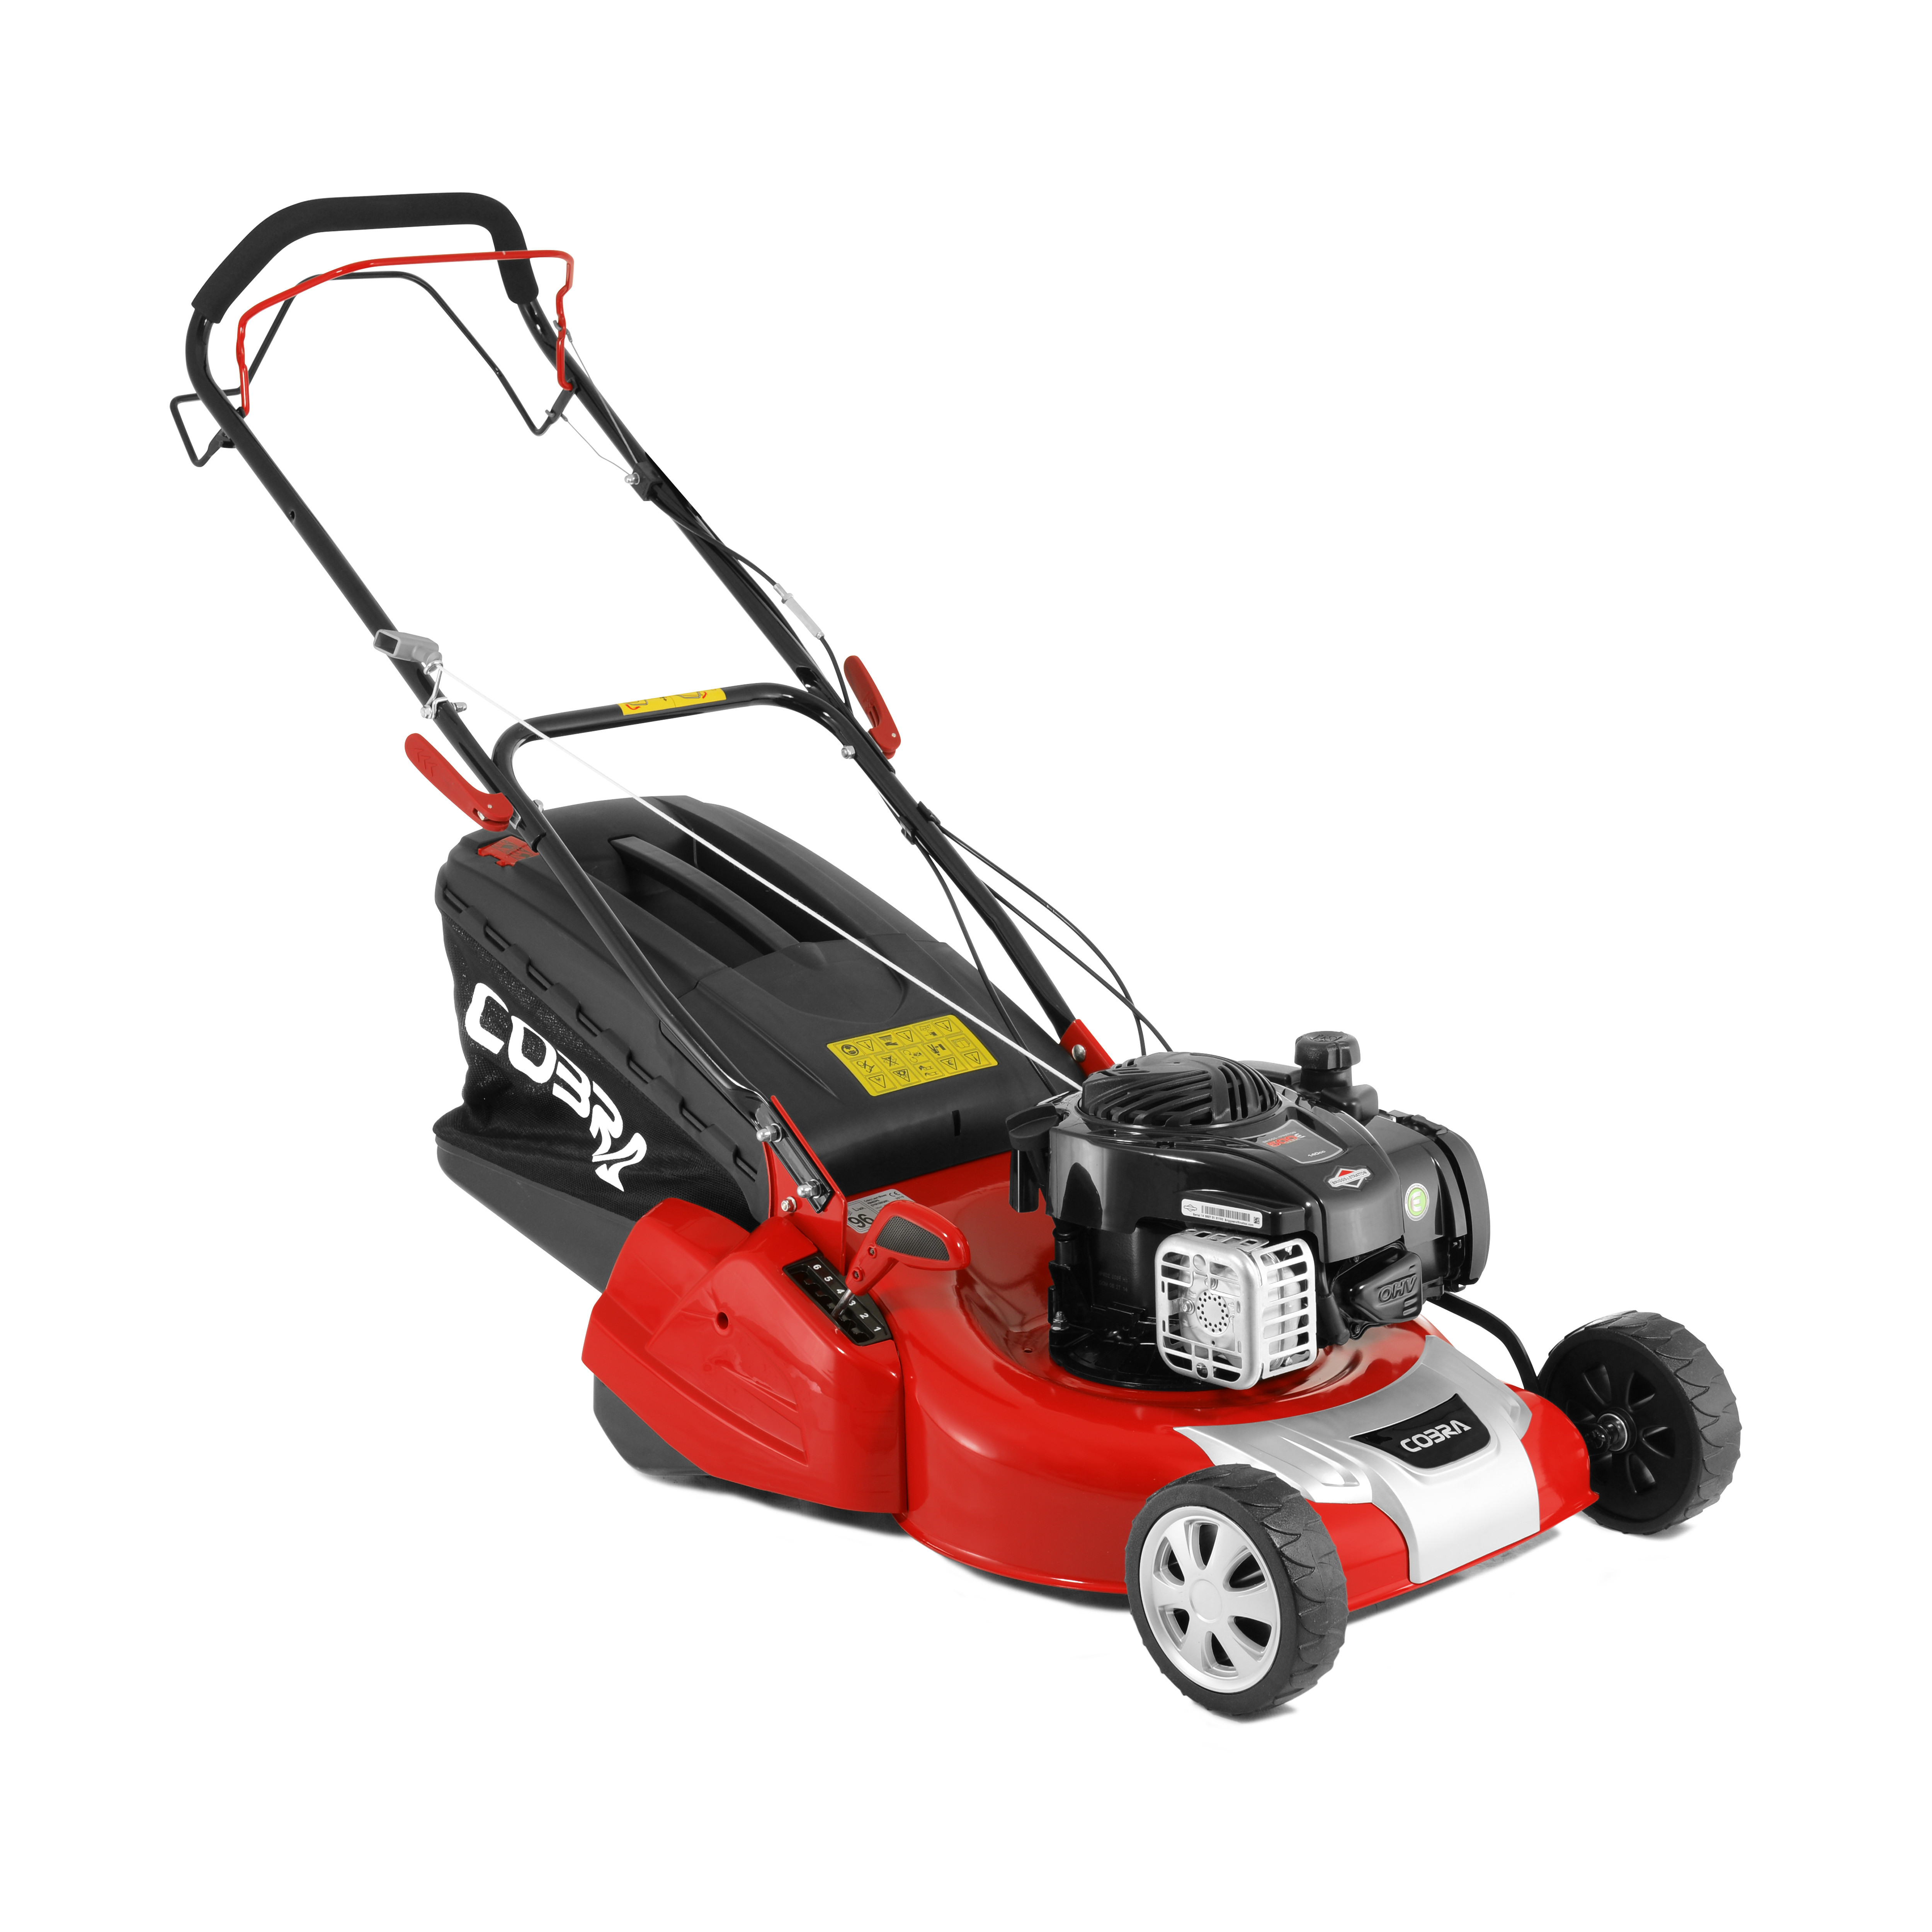 RM46SPB 18" B&S S/P Rear Roller Lawnmower